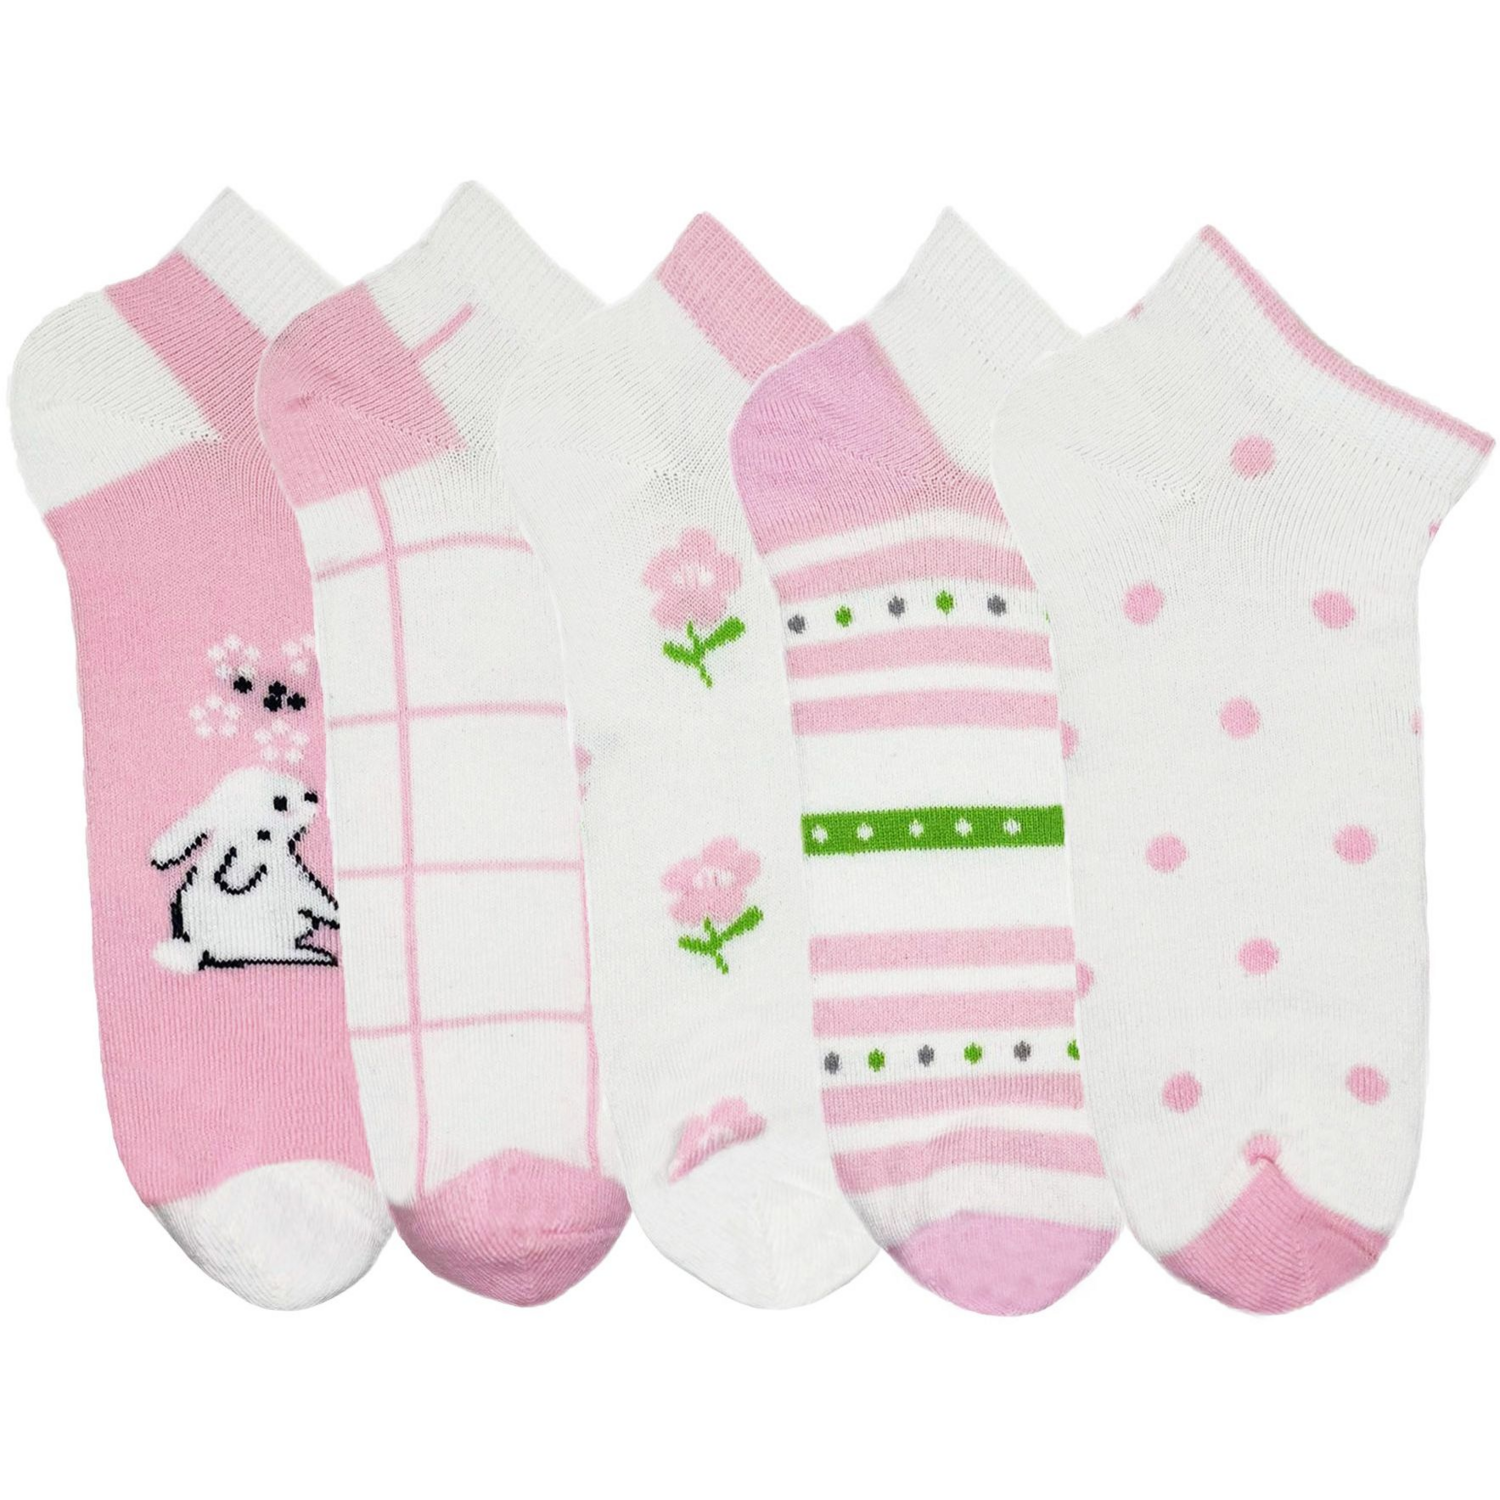 Набор носков Для девочек Premier Socks 22-24 5 пар розовые с принтом (4820163319728) фото 